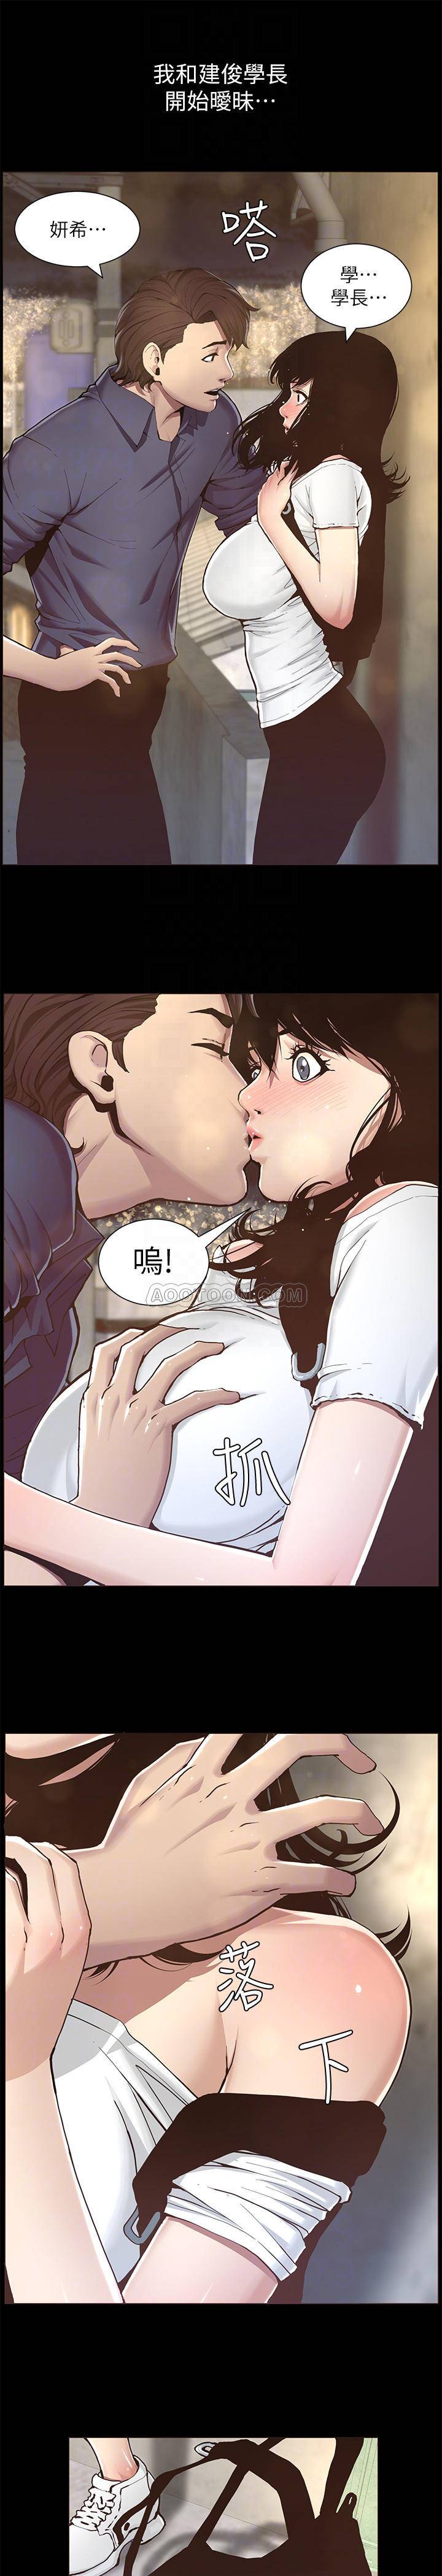 韩国污漫画 姐妹與繼父 第47话-无法达到高潮的失望表情 8